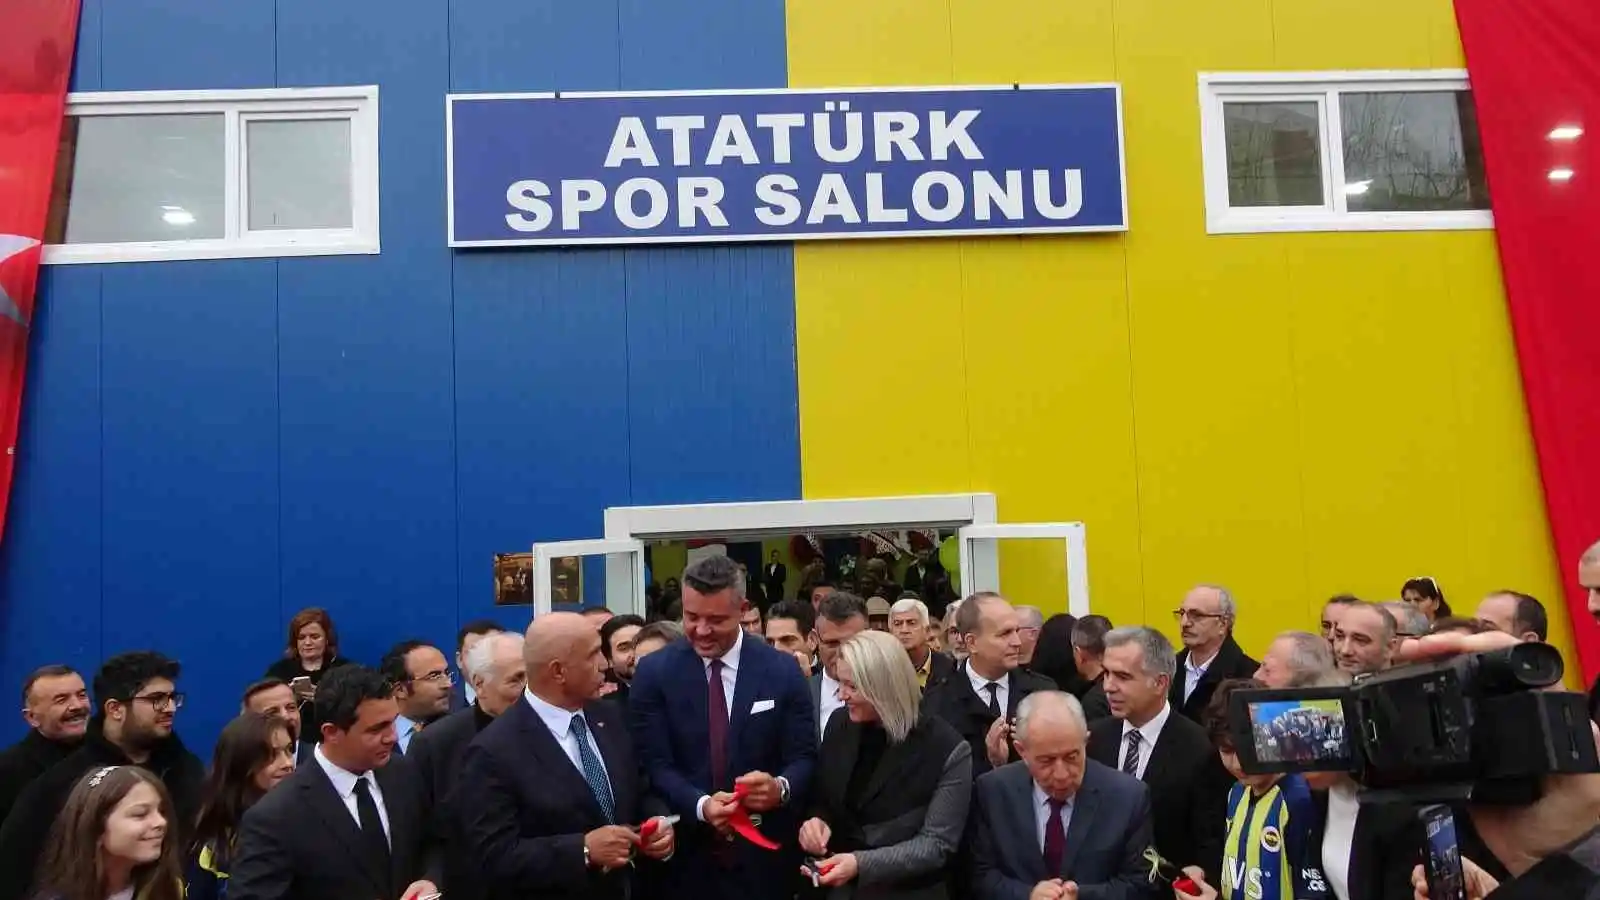 Saran Grup, 23’üncü Spor Salonu’nu Çanakkale’de açtı
